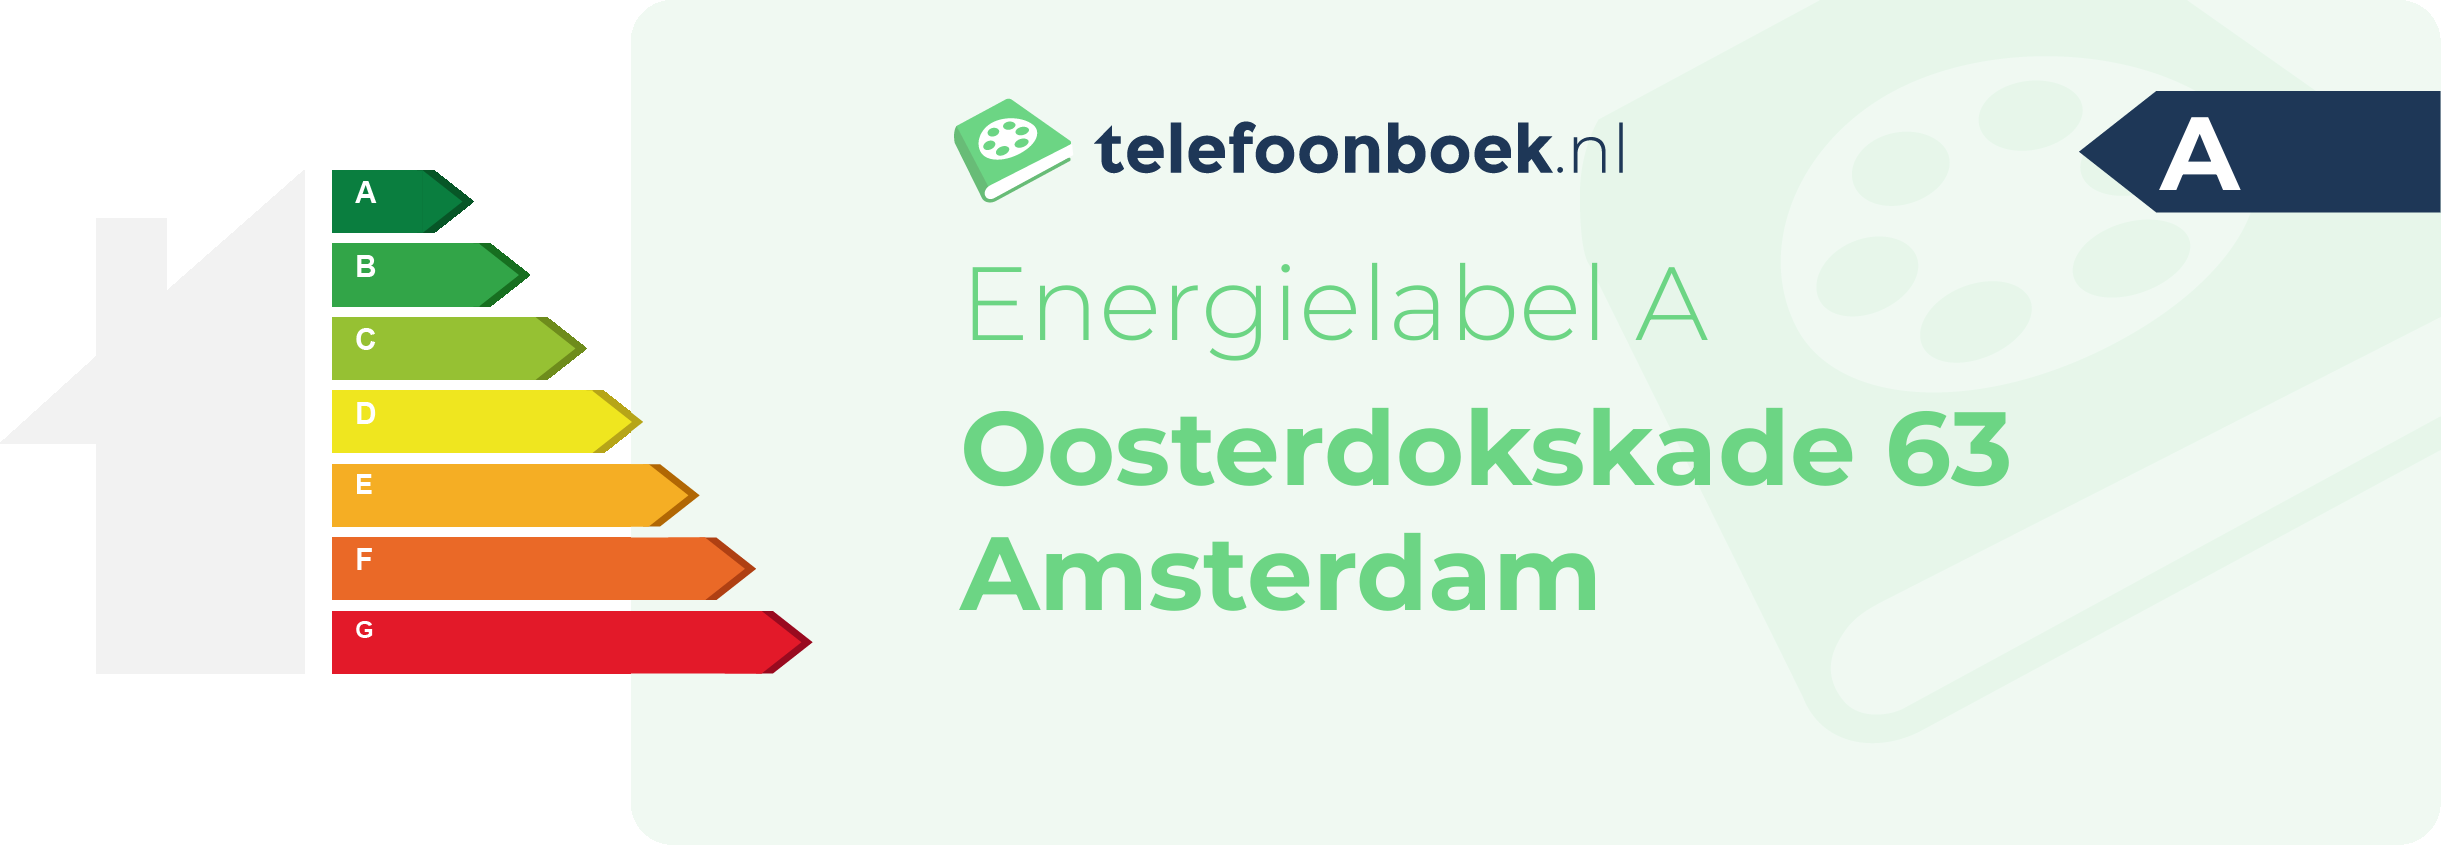 Energielabel Oosterdokskade 63 Amsterdam